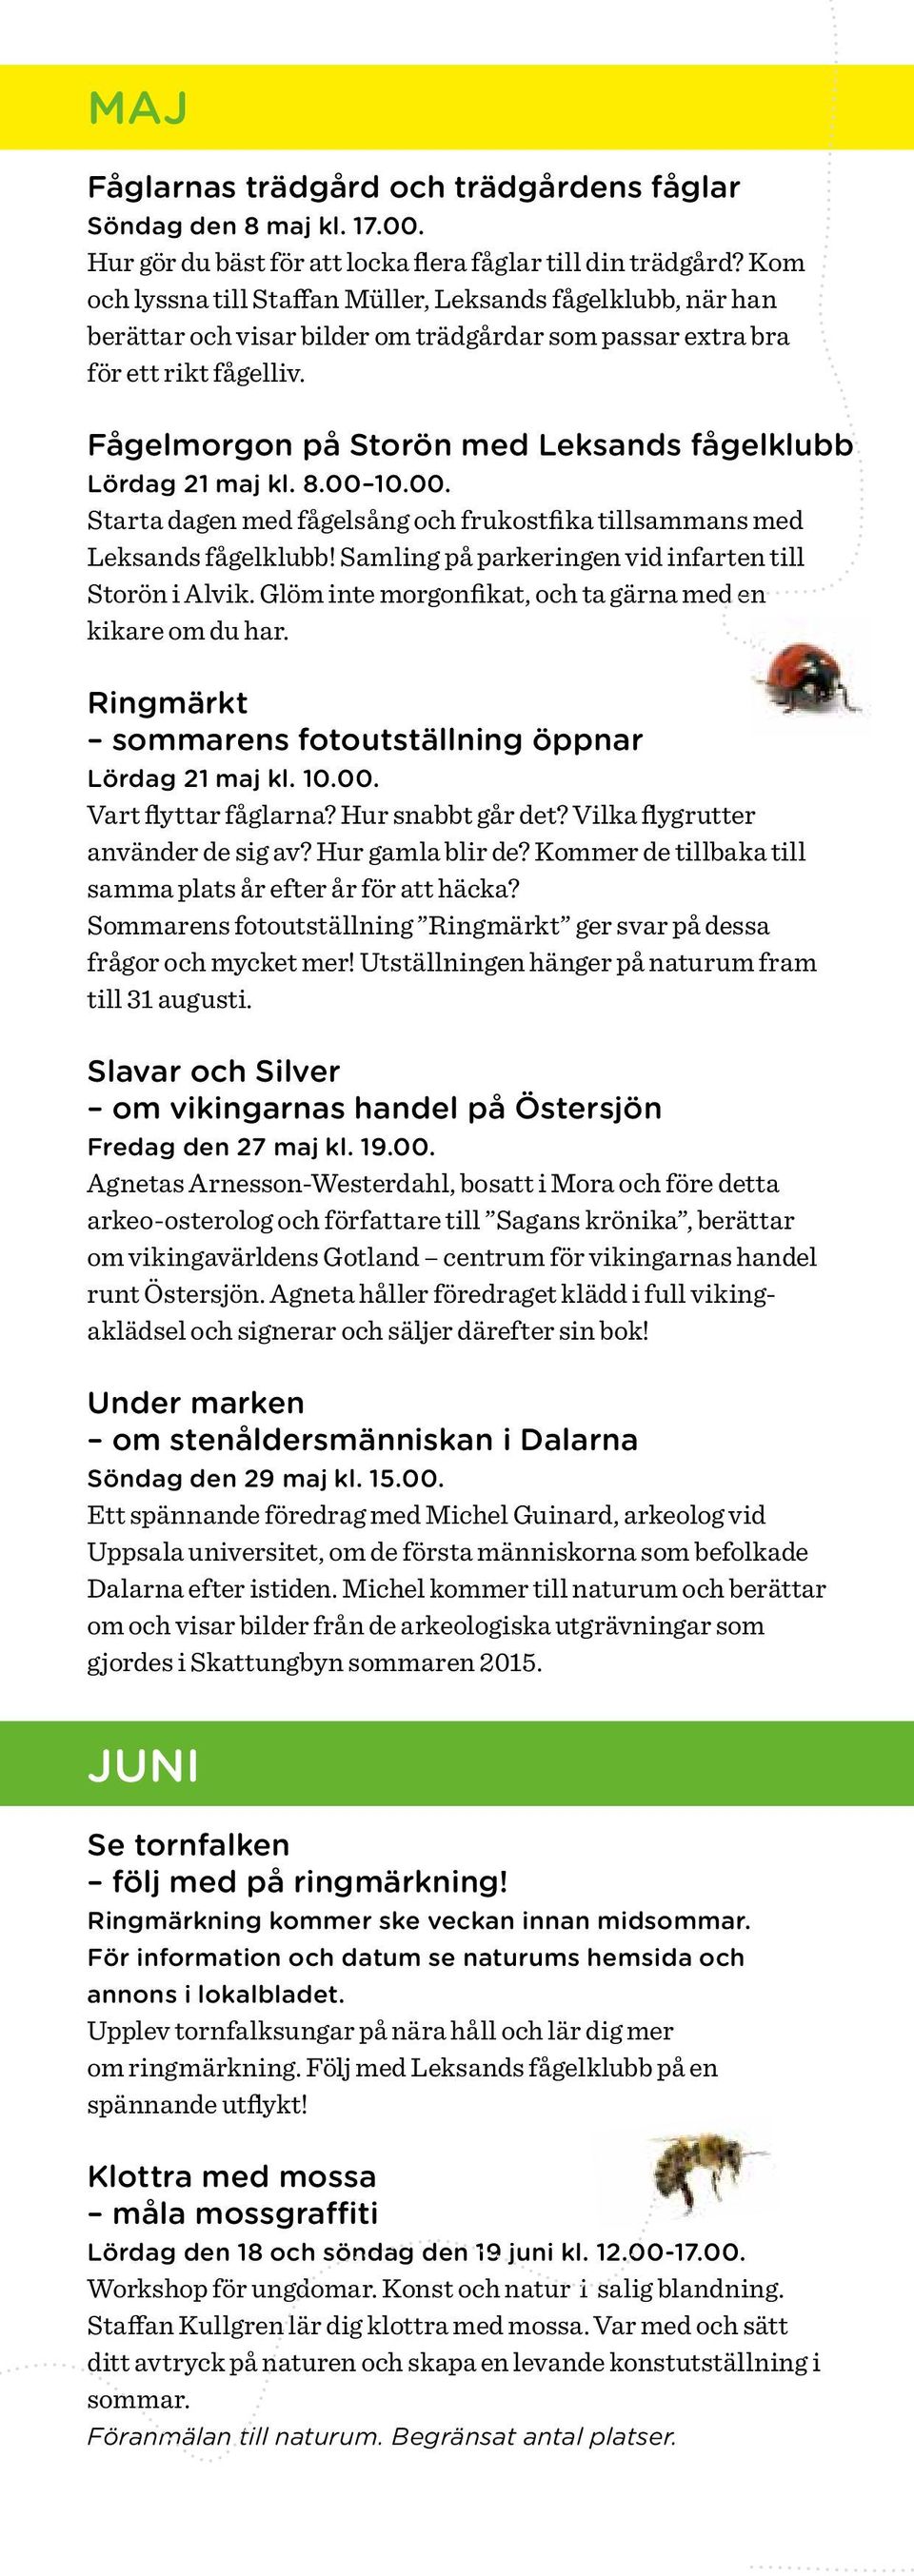 Fågelmorgon på Storön med Leksands fågelklubb Lördag 21 maj kl. 8.00 10.00. Starta dagen med fågelsång och frukostfika tillsammans med Leksands fågelklubb!